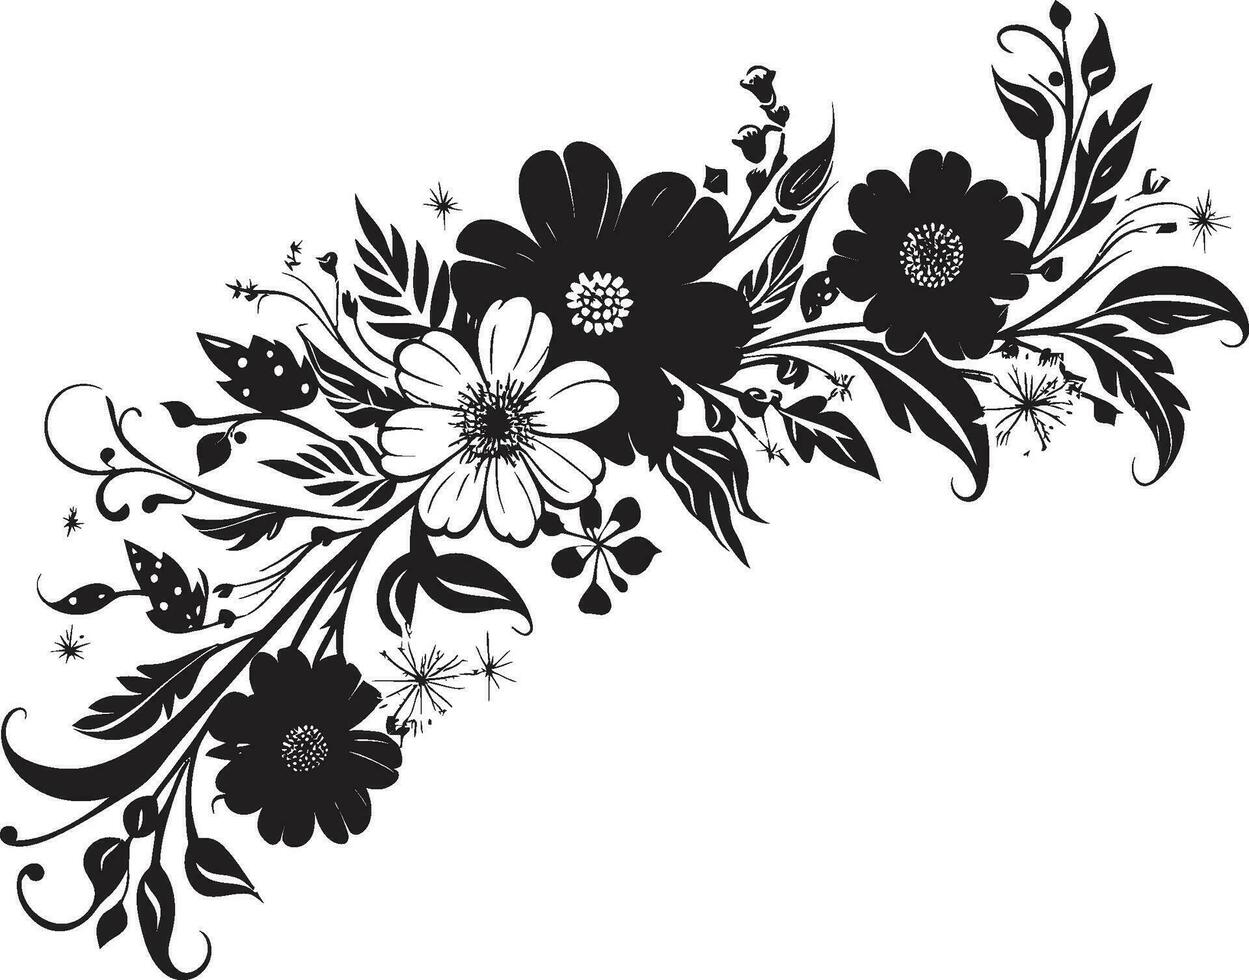 artístico noir florece negro logo decorativo elementos elegante floral detalles invitación tarjeta vector adornos